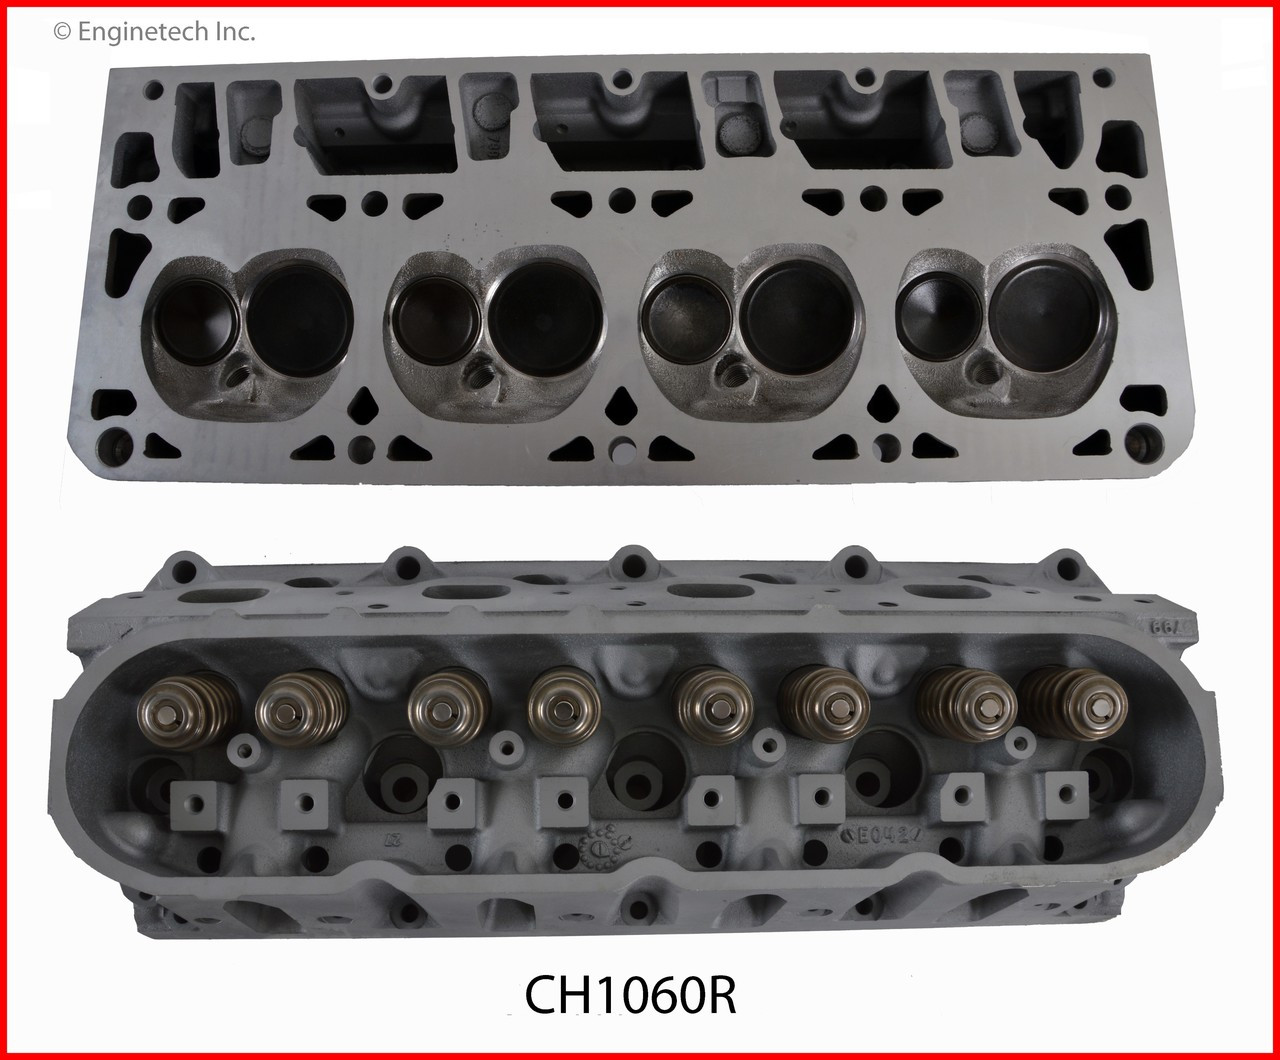 Cylinder Head Assembly - 2009 Saab 9-7x 6.0L (CH1060R.K325)